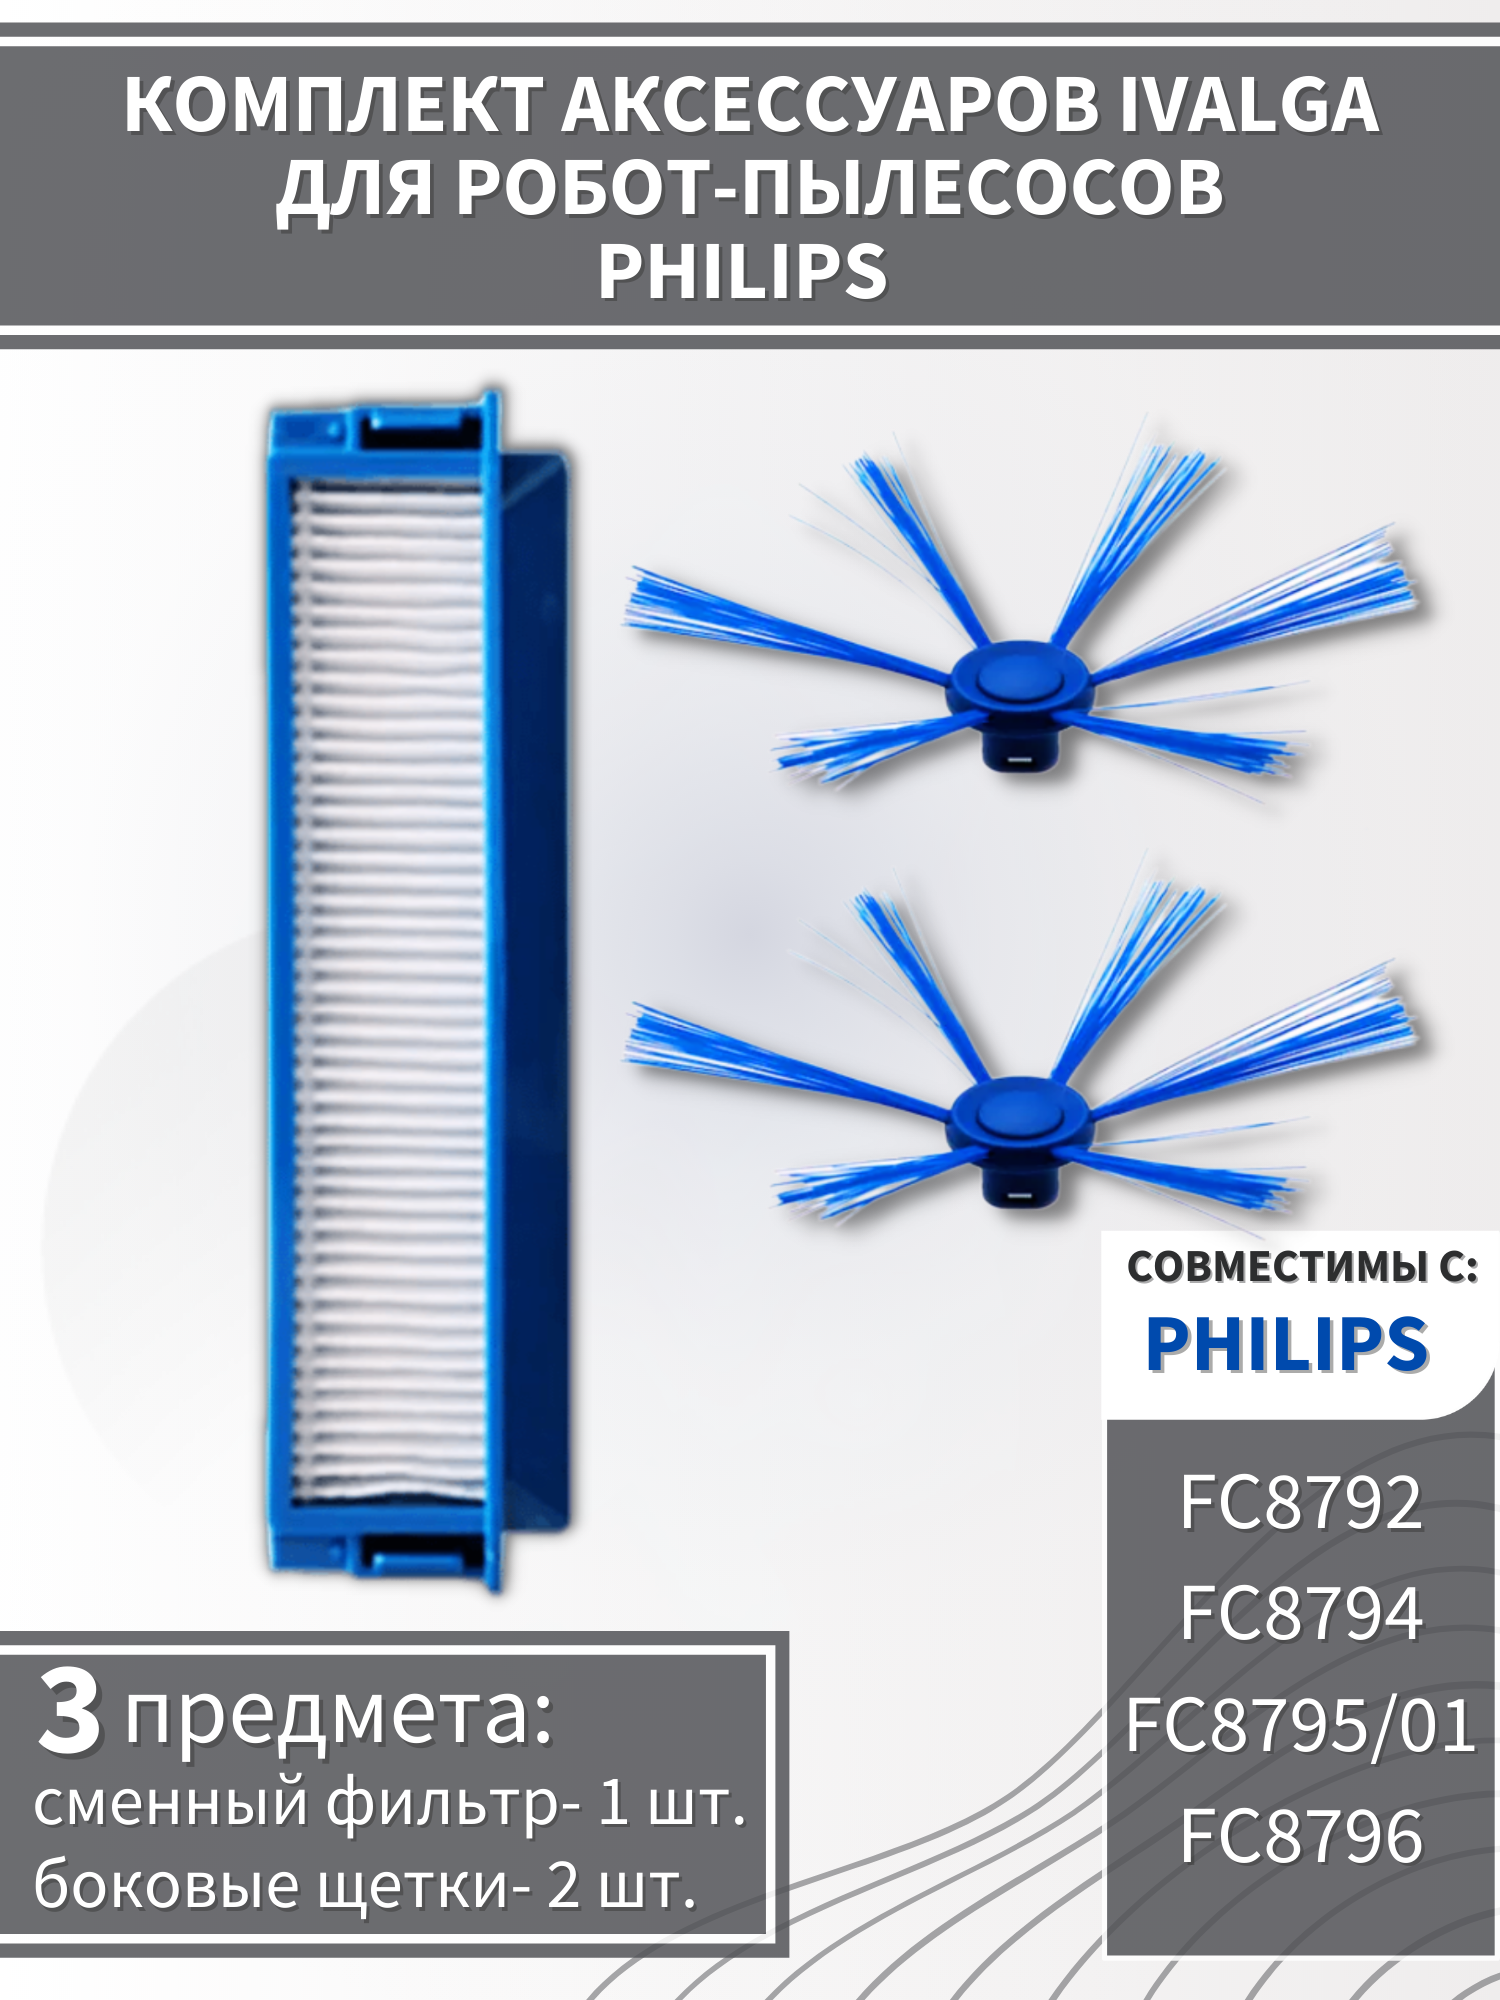 Фильтр и боковые щетки для робота-пылесоса Philips FC8792/ FC8794/ FC8795-01/ FC8796